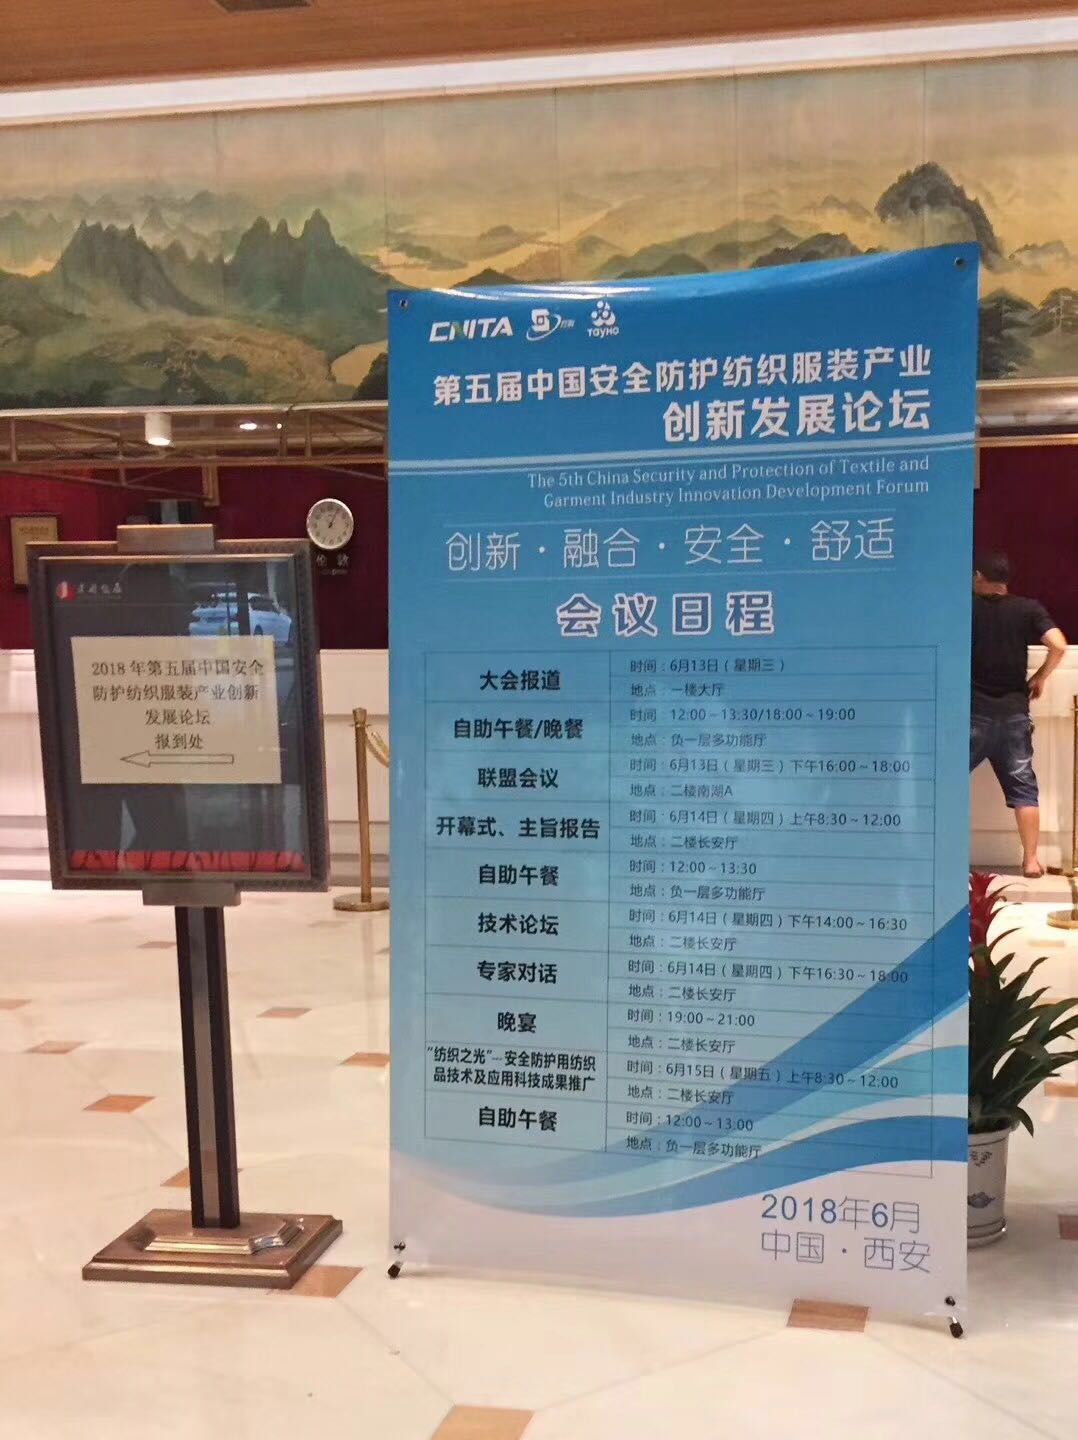 卓诚纺织参加第五届中国安全防护纺织服装产业创新发展论坛